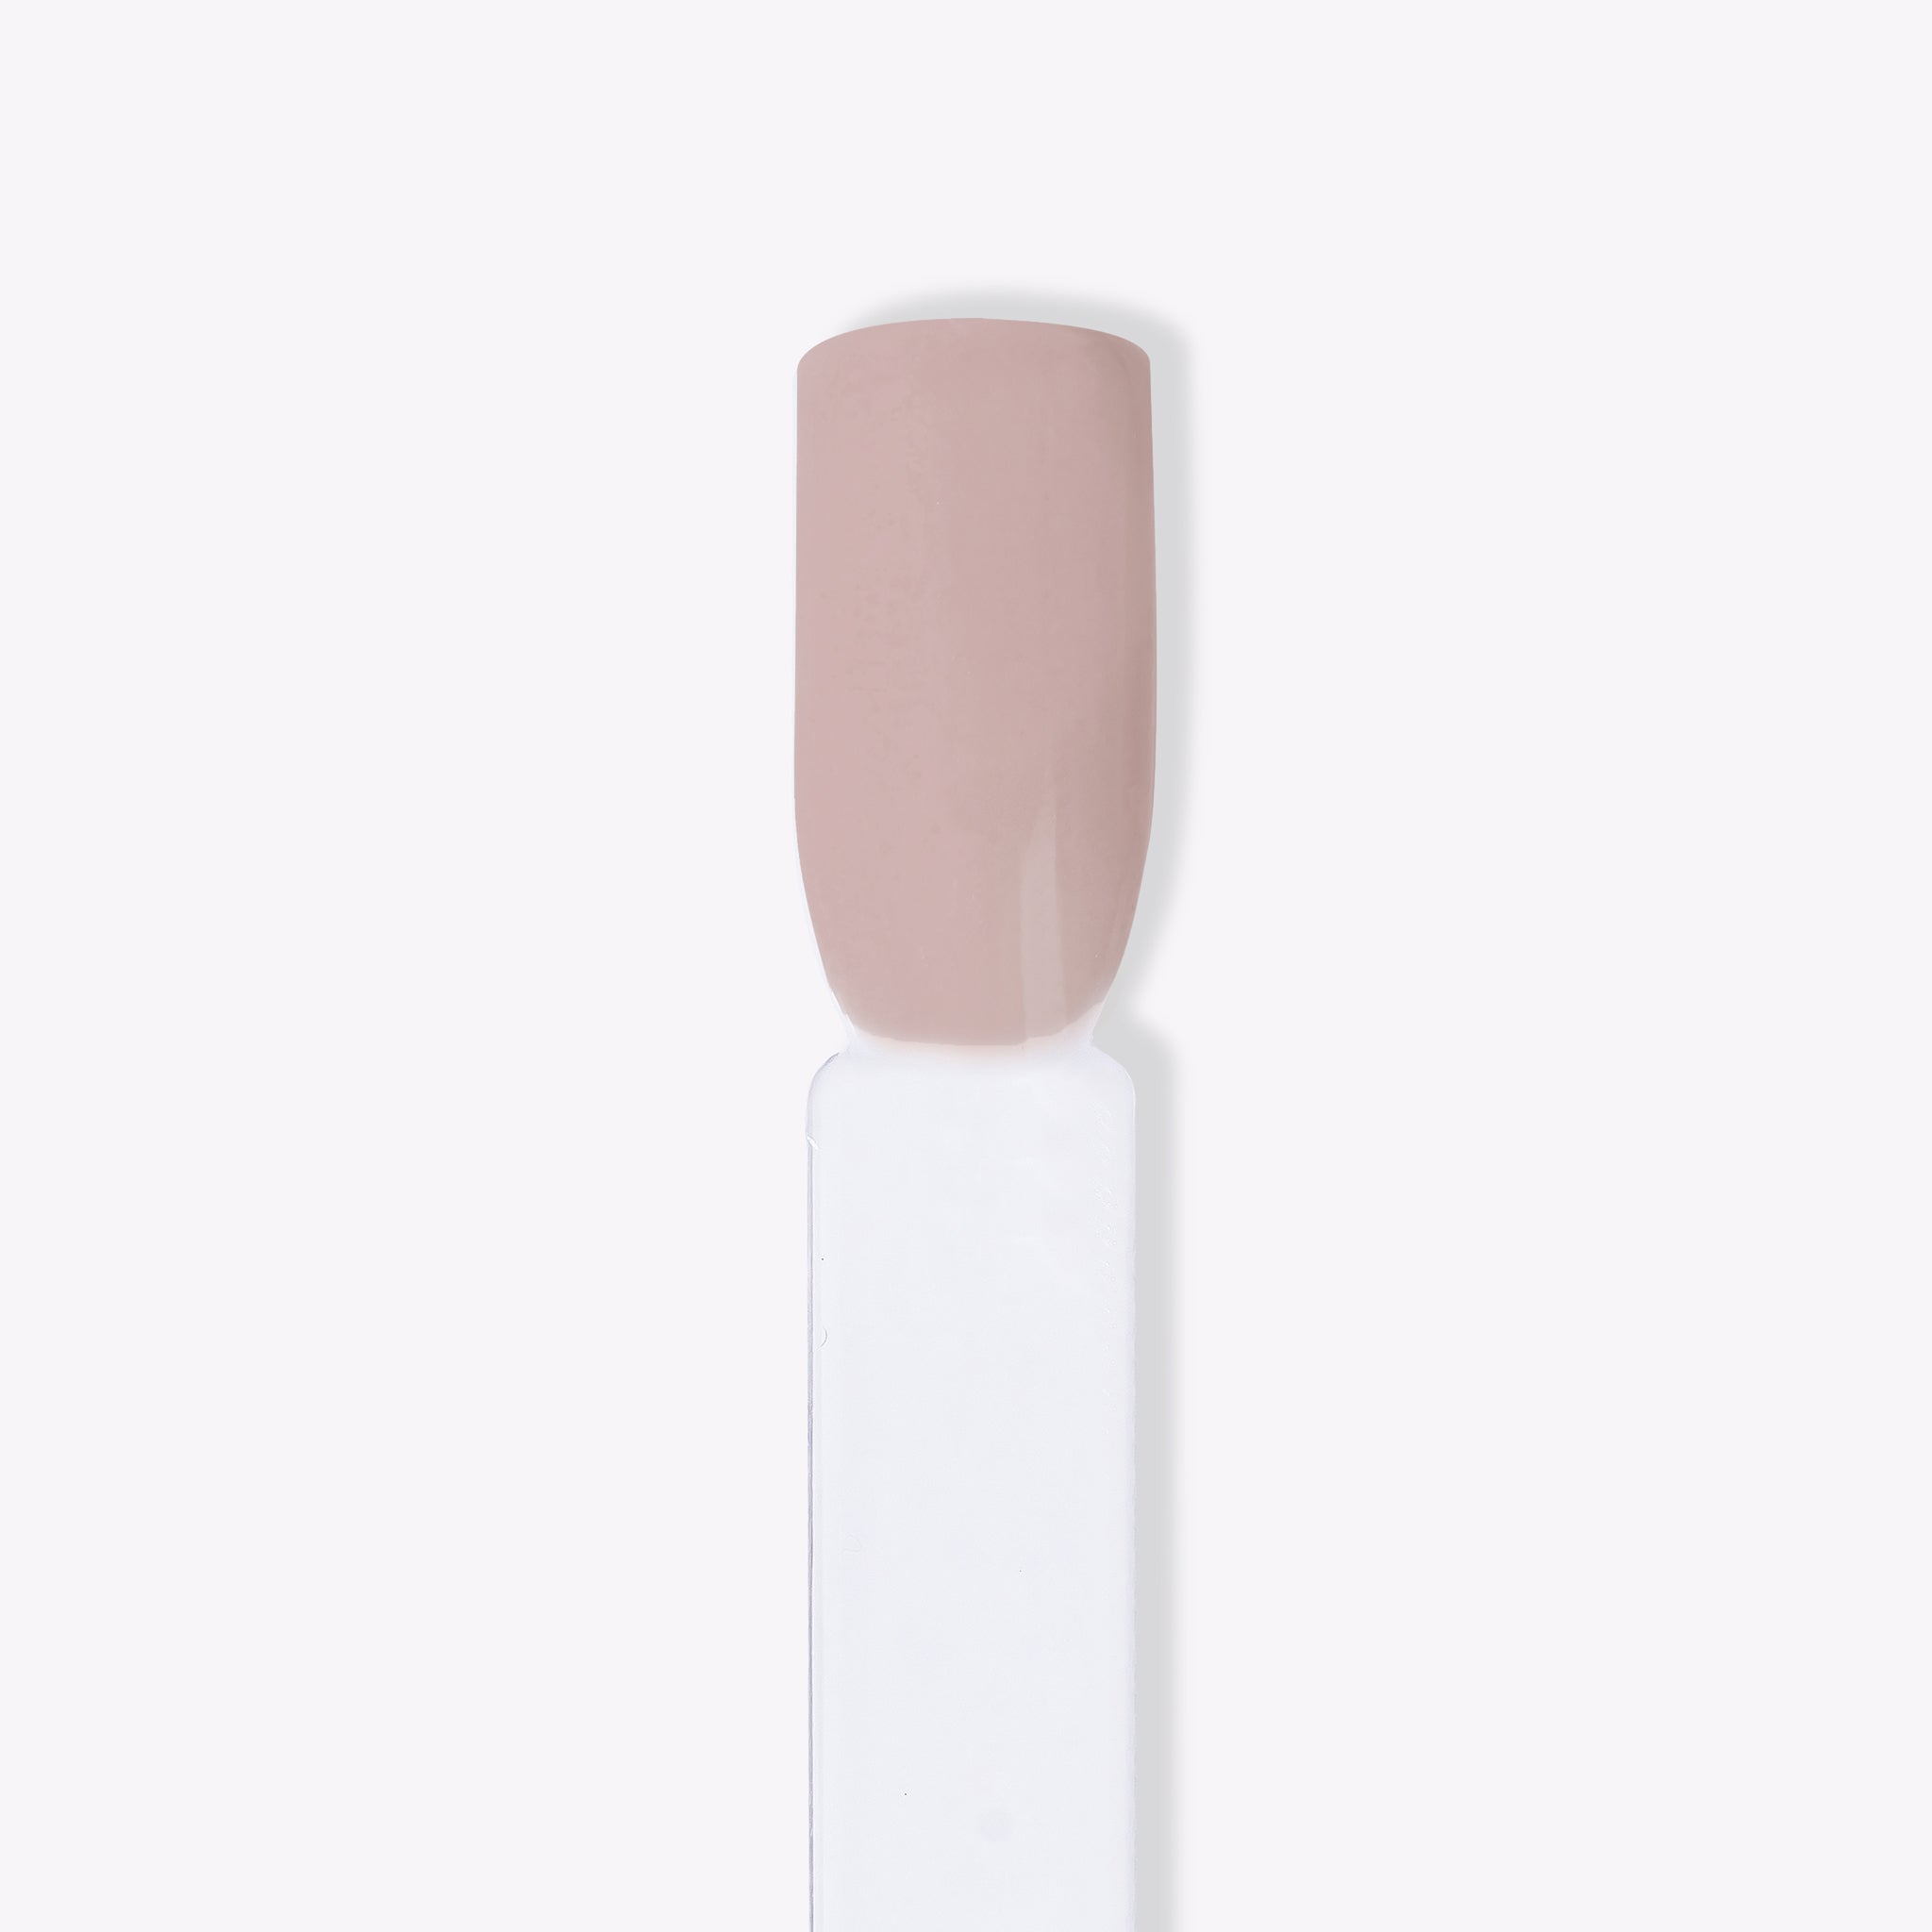 Närbild av karamelltonat nagellack med svag rosa nyans för naglar hemma och nageltrender 2024. Idealisk för hållbara naglar med nagelkit och gellack, bärbar på landet eller i staden